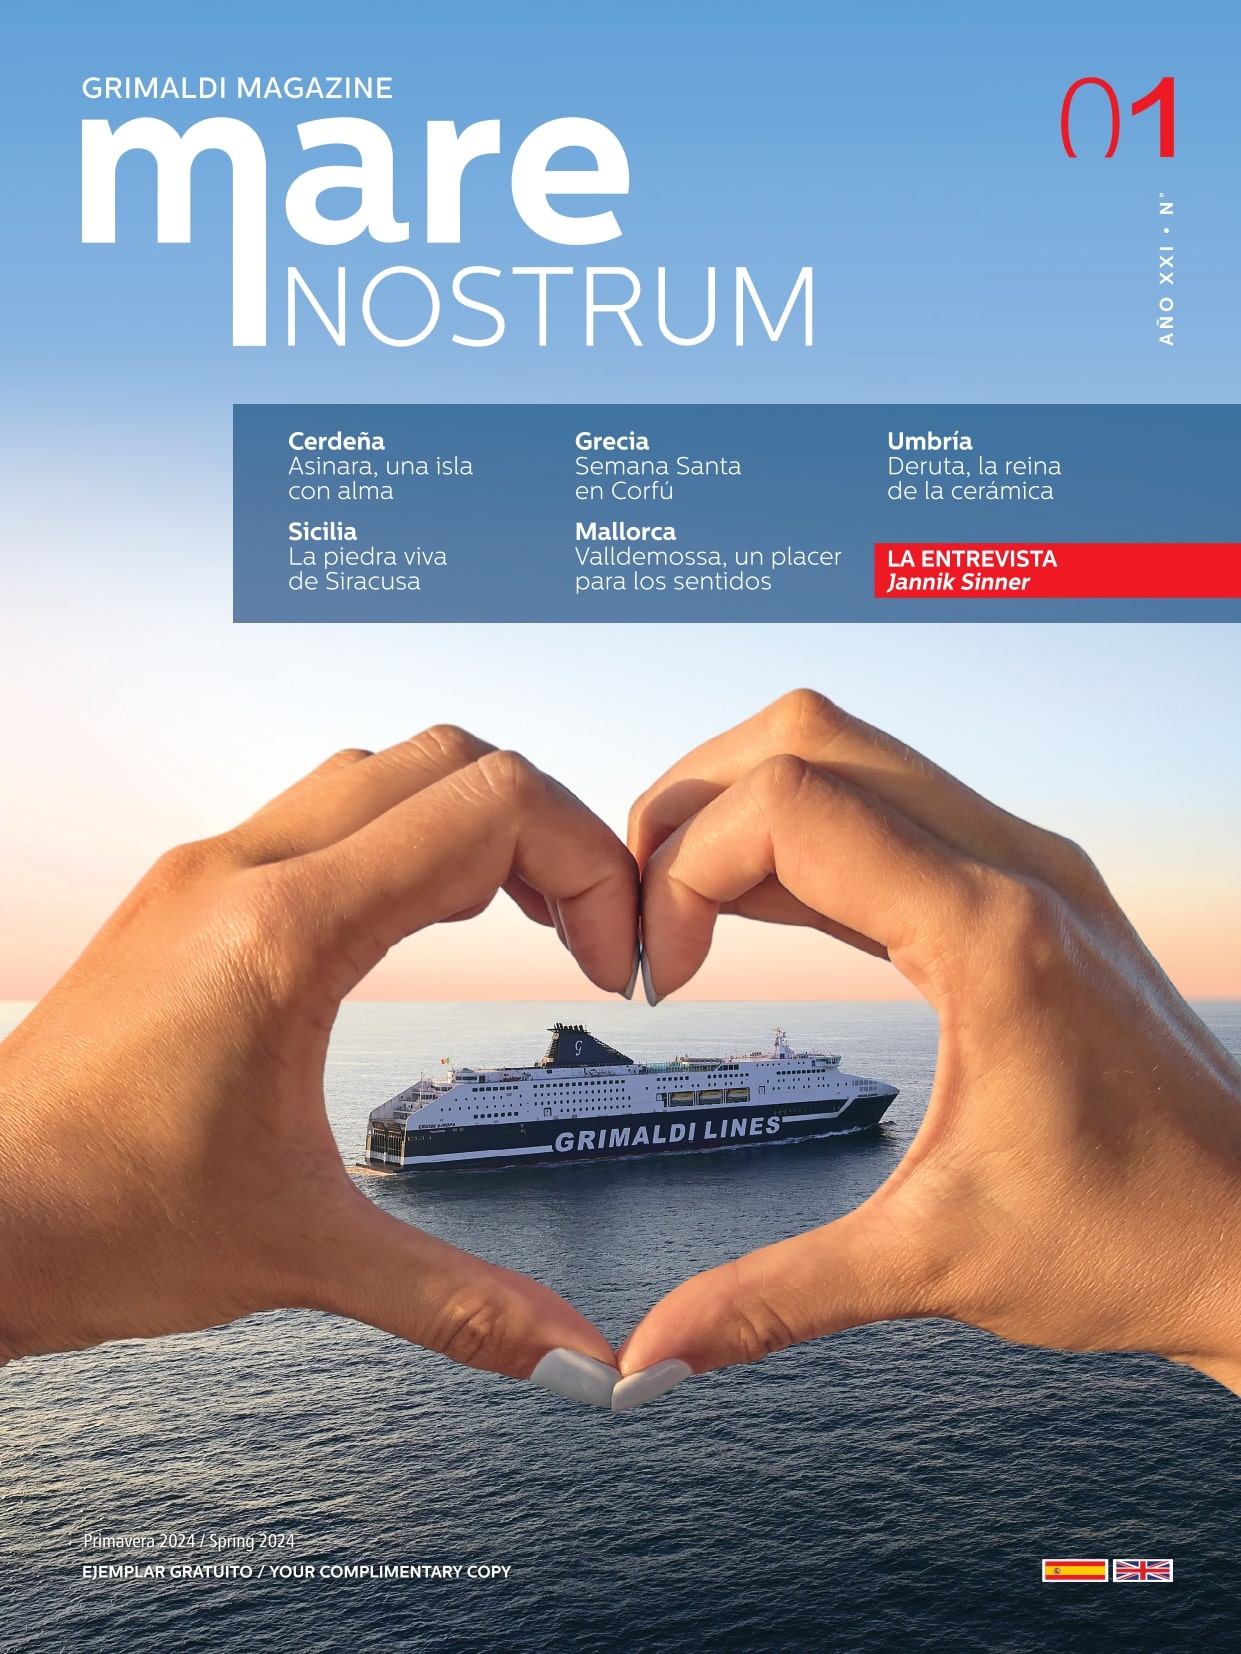 Grimaldi Magazine Mare Nostrum (Anno XXI n. 1) Spagnolo-Inglese